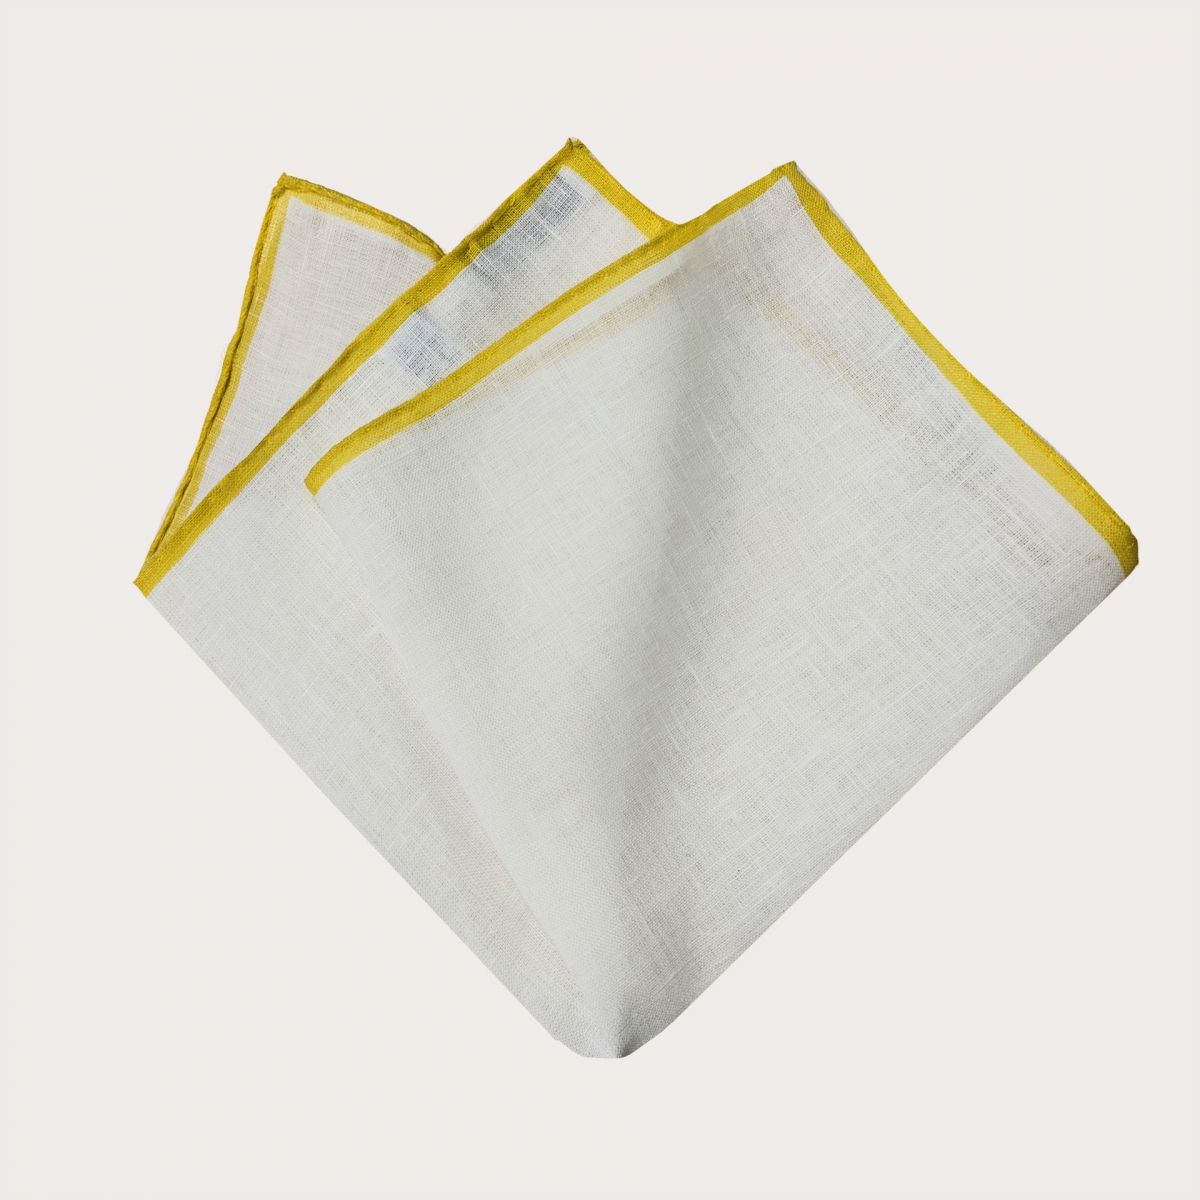 Taschentuch pochette leinen weib gelb